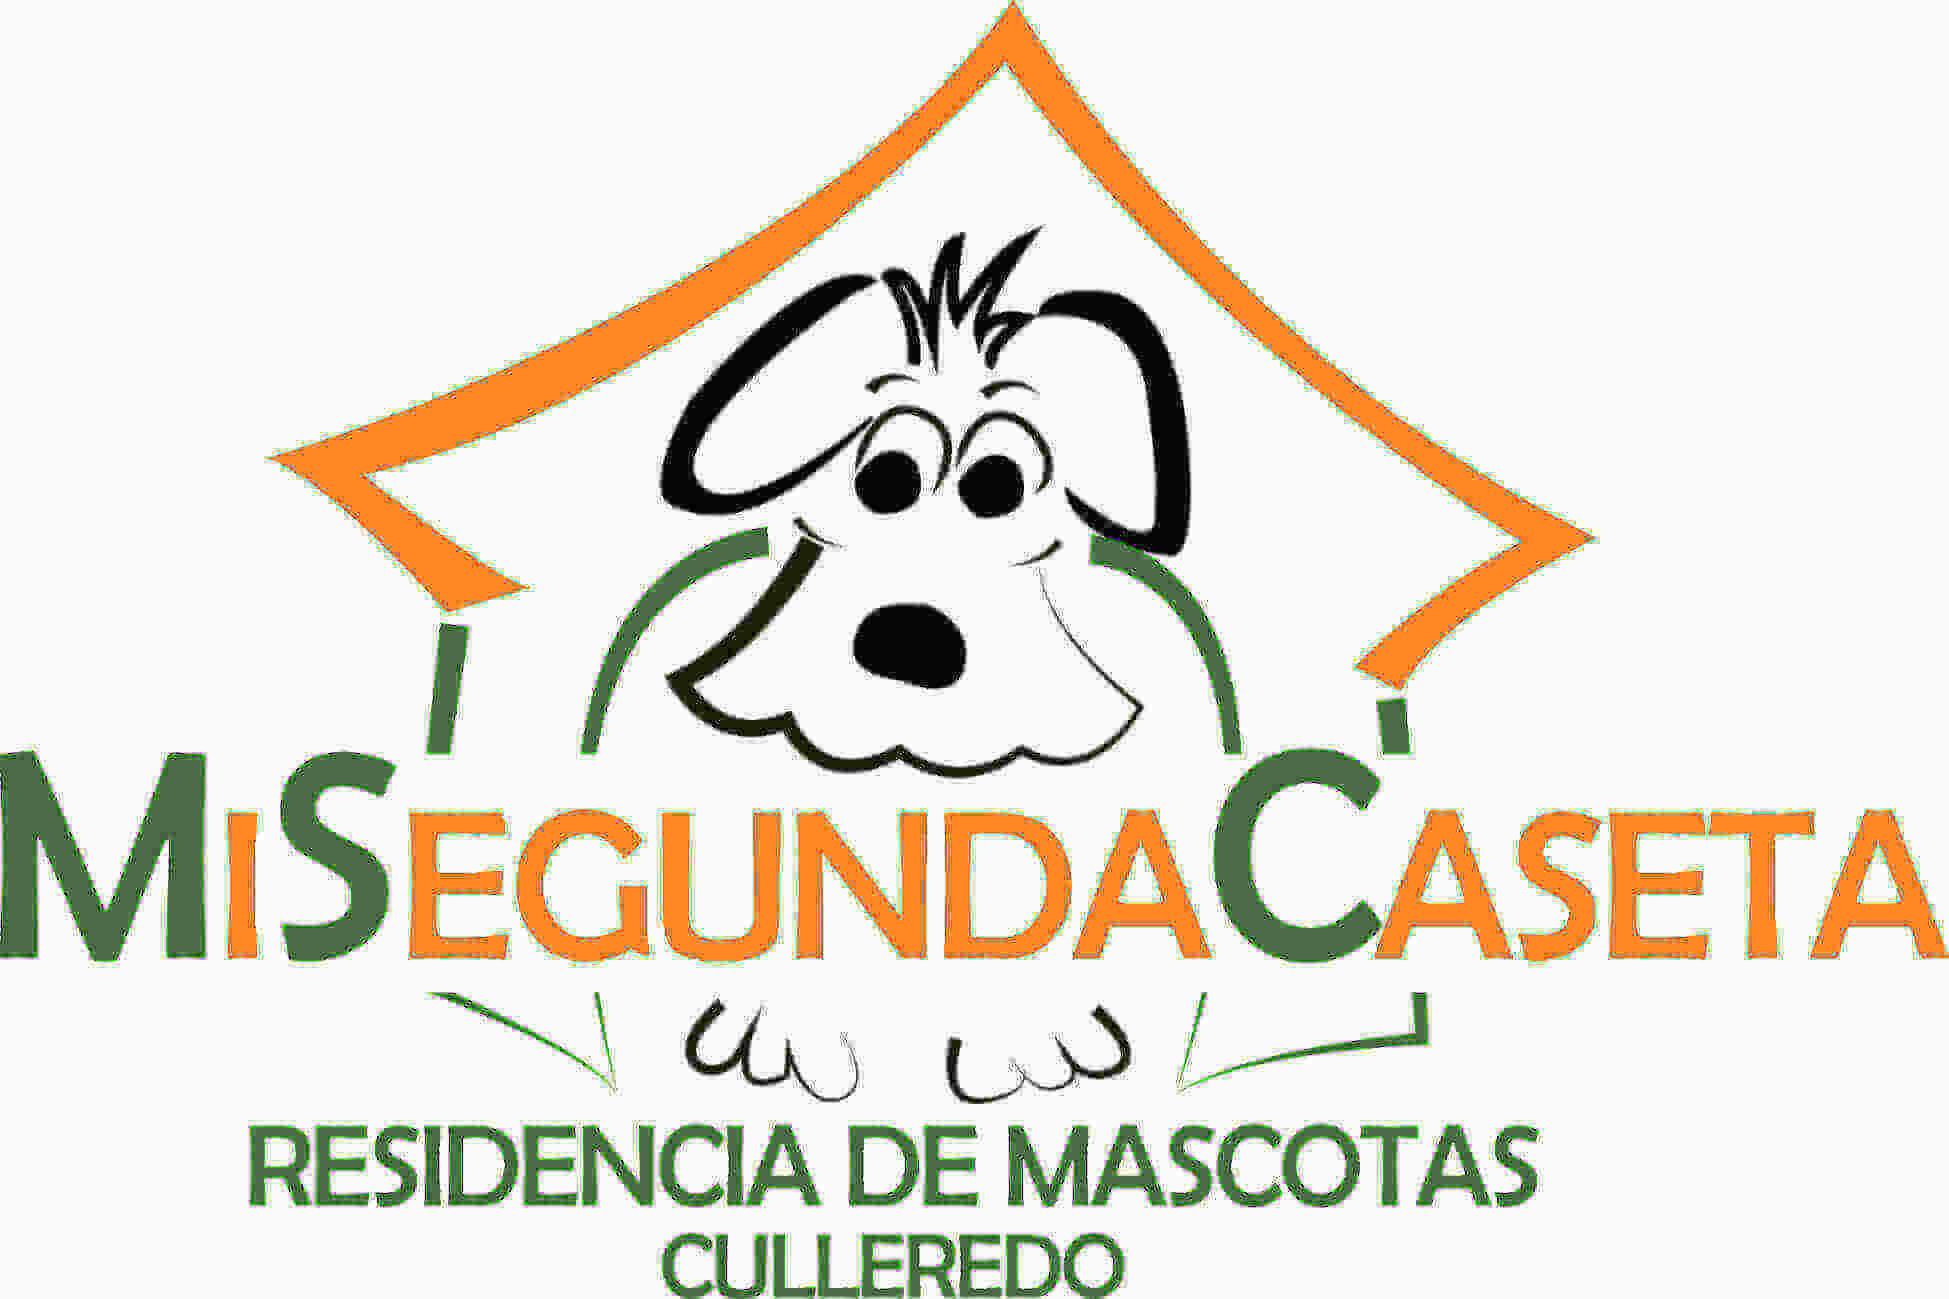 Residencias mascotas Coruña MI SEGUNDA CASETA